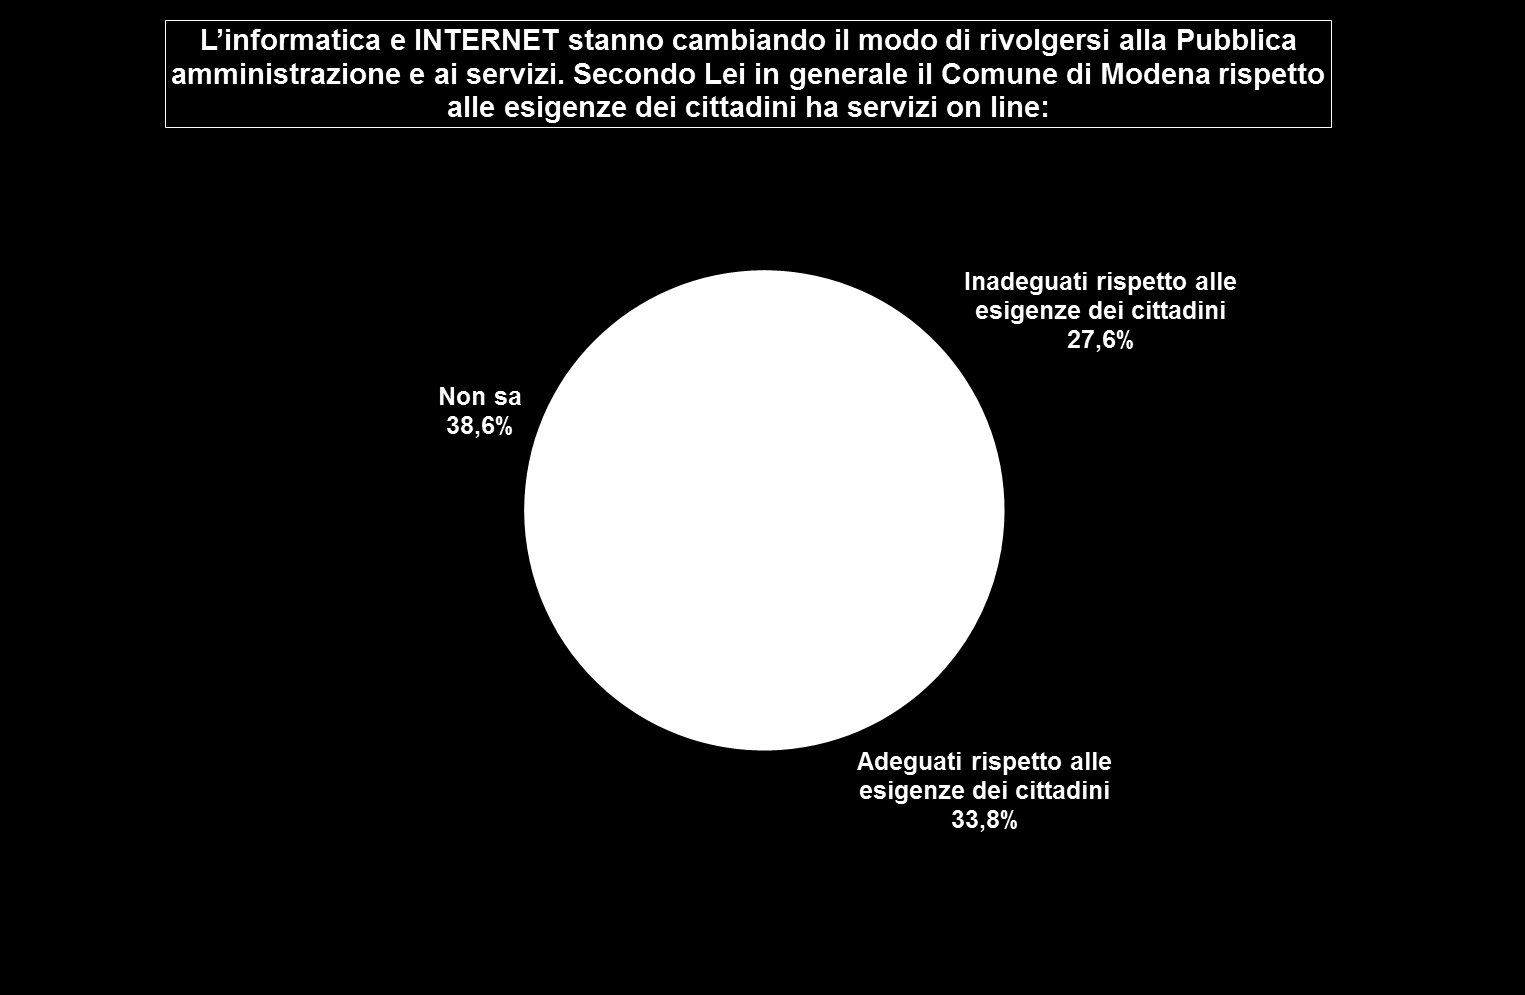 L adeguatezza dei servizi on line del Comune di Modena rispetto alle nuove modalità di rapporto cittadini/pubblica amministrazione non è ben conosciuta dagli intervistati, tanto che la maggioranza